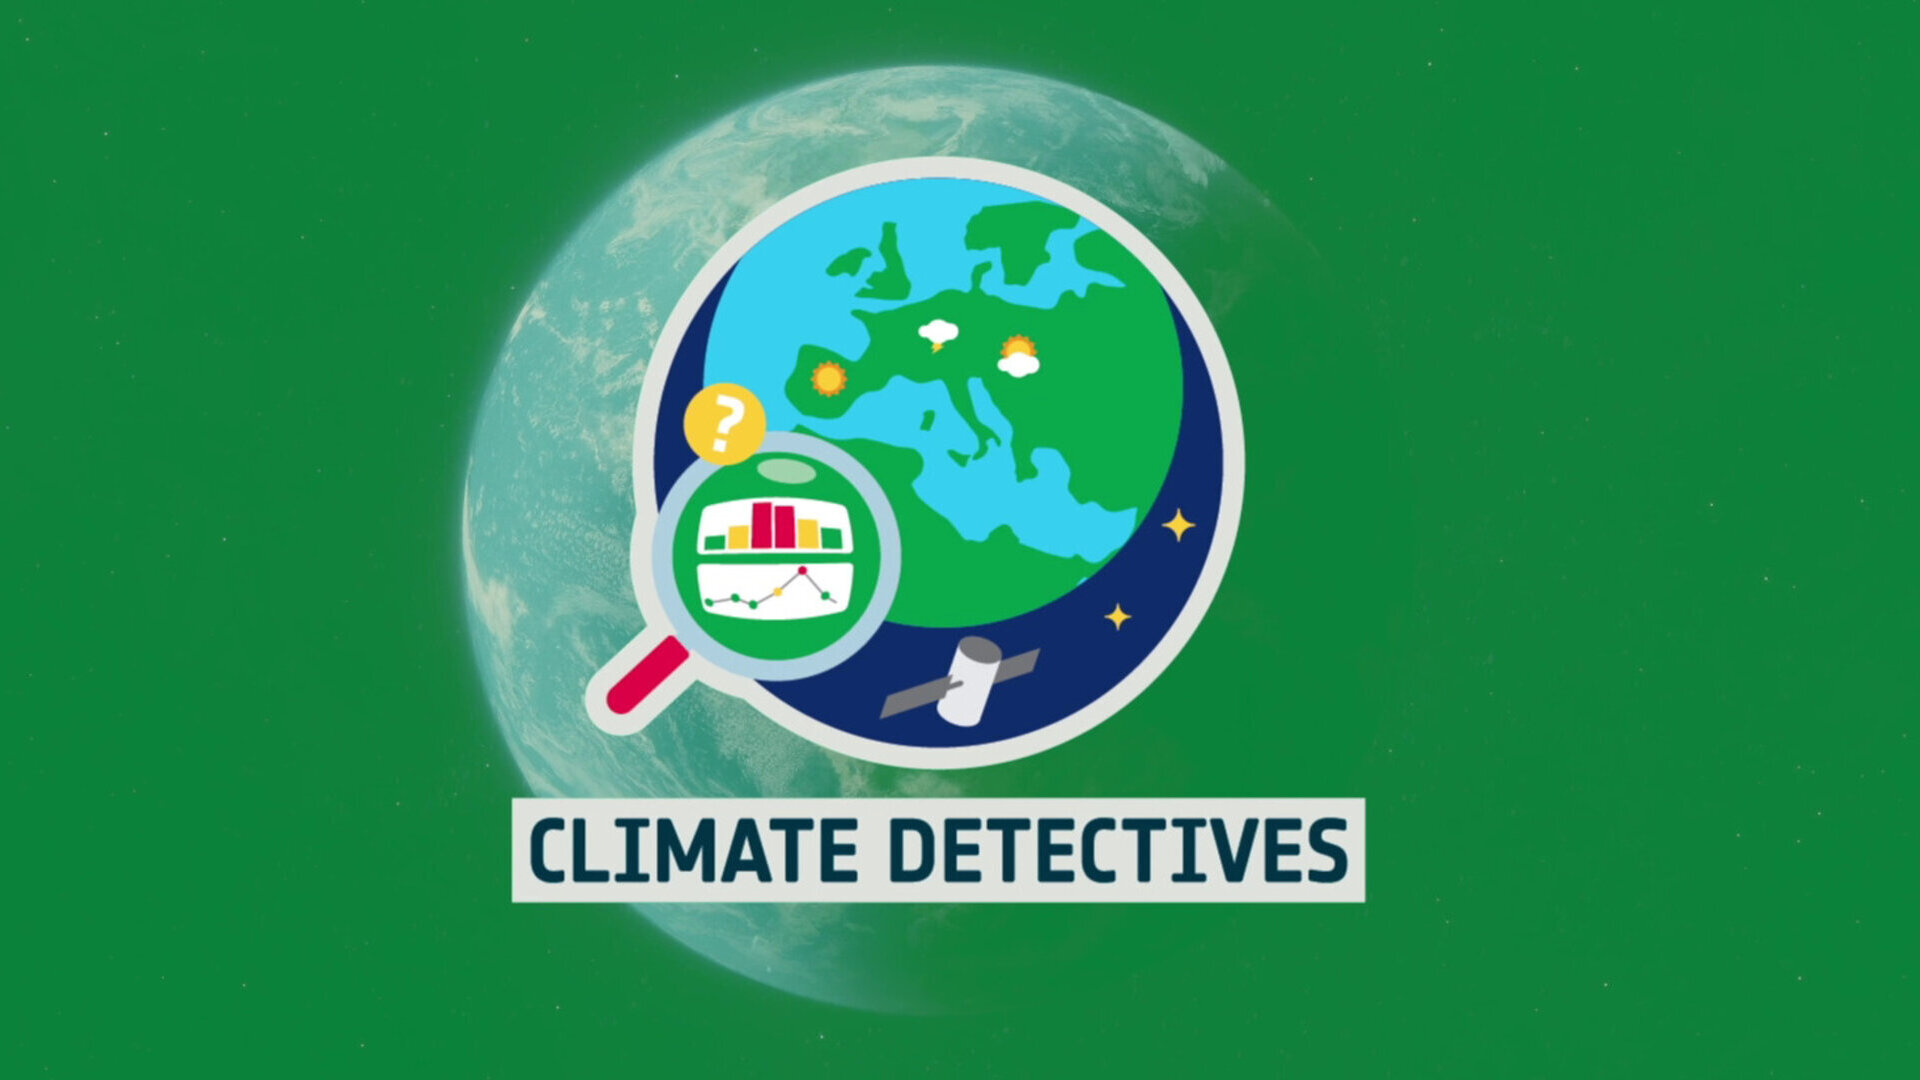 “Climate Detectives”, progetto educativo dedicato ai cambiamenti climatici